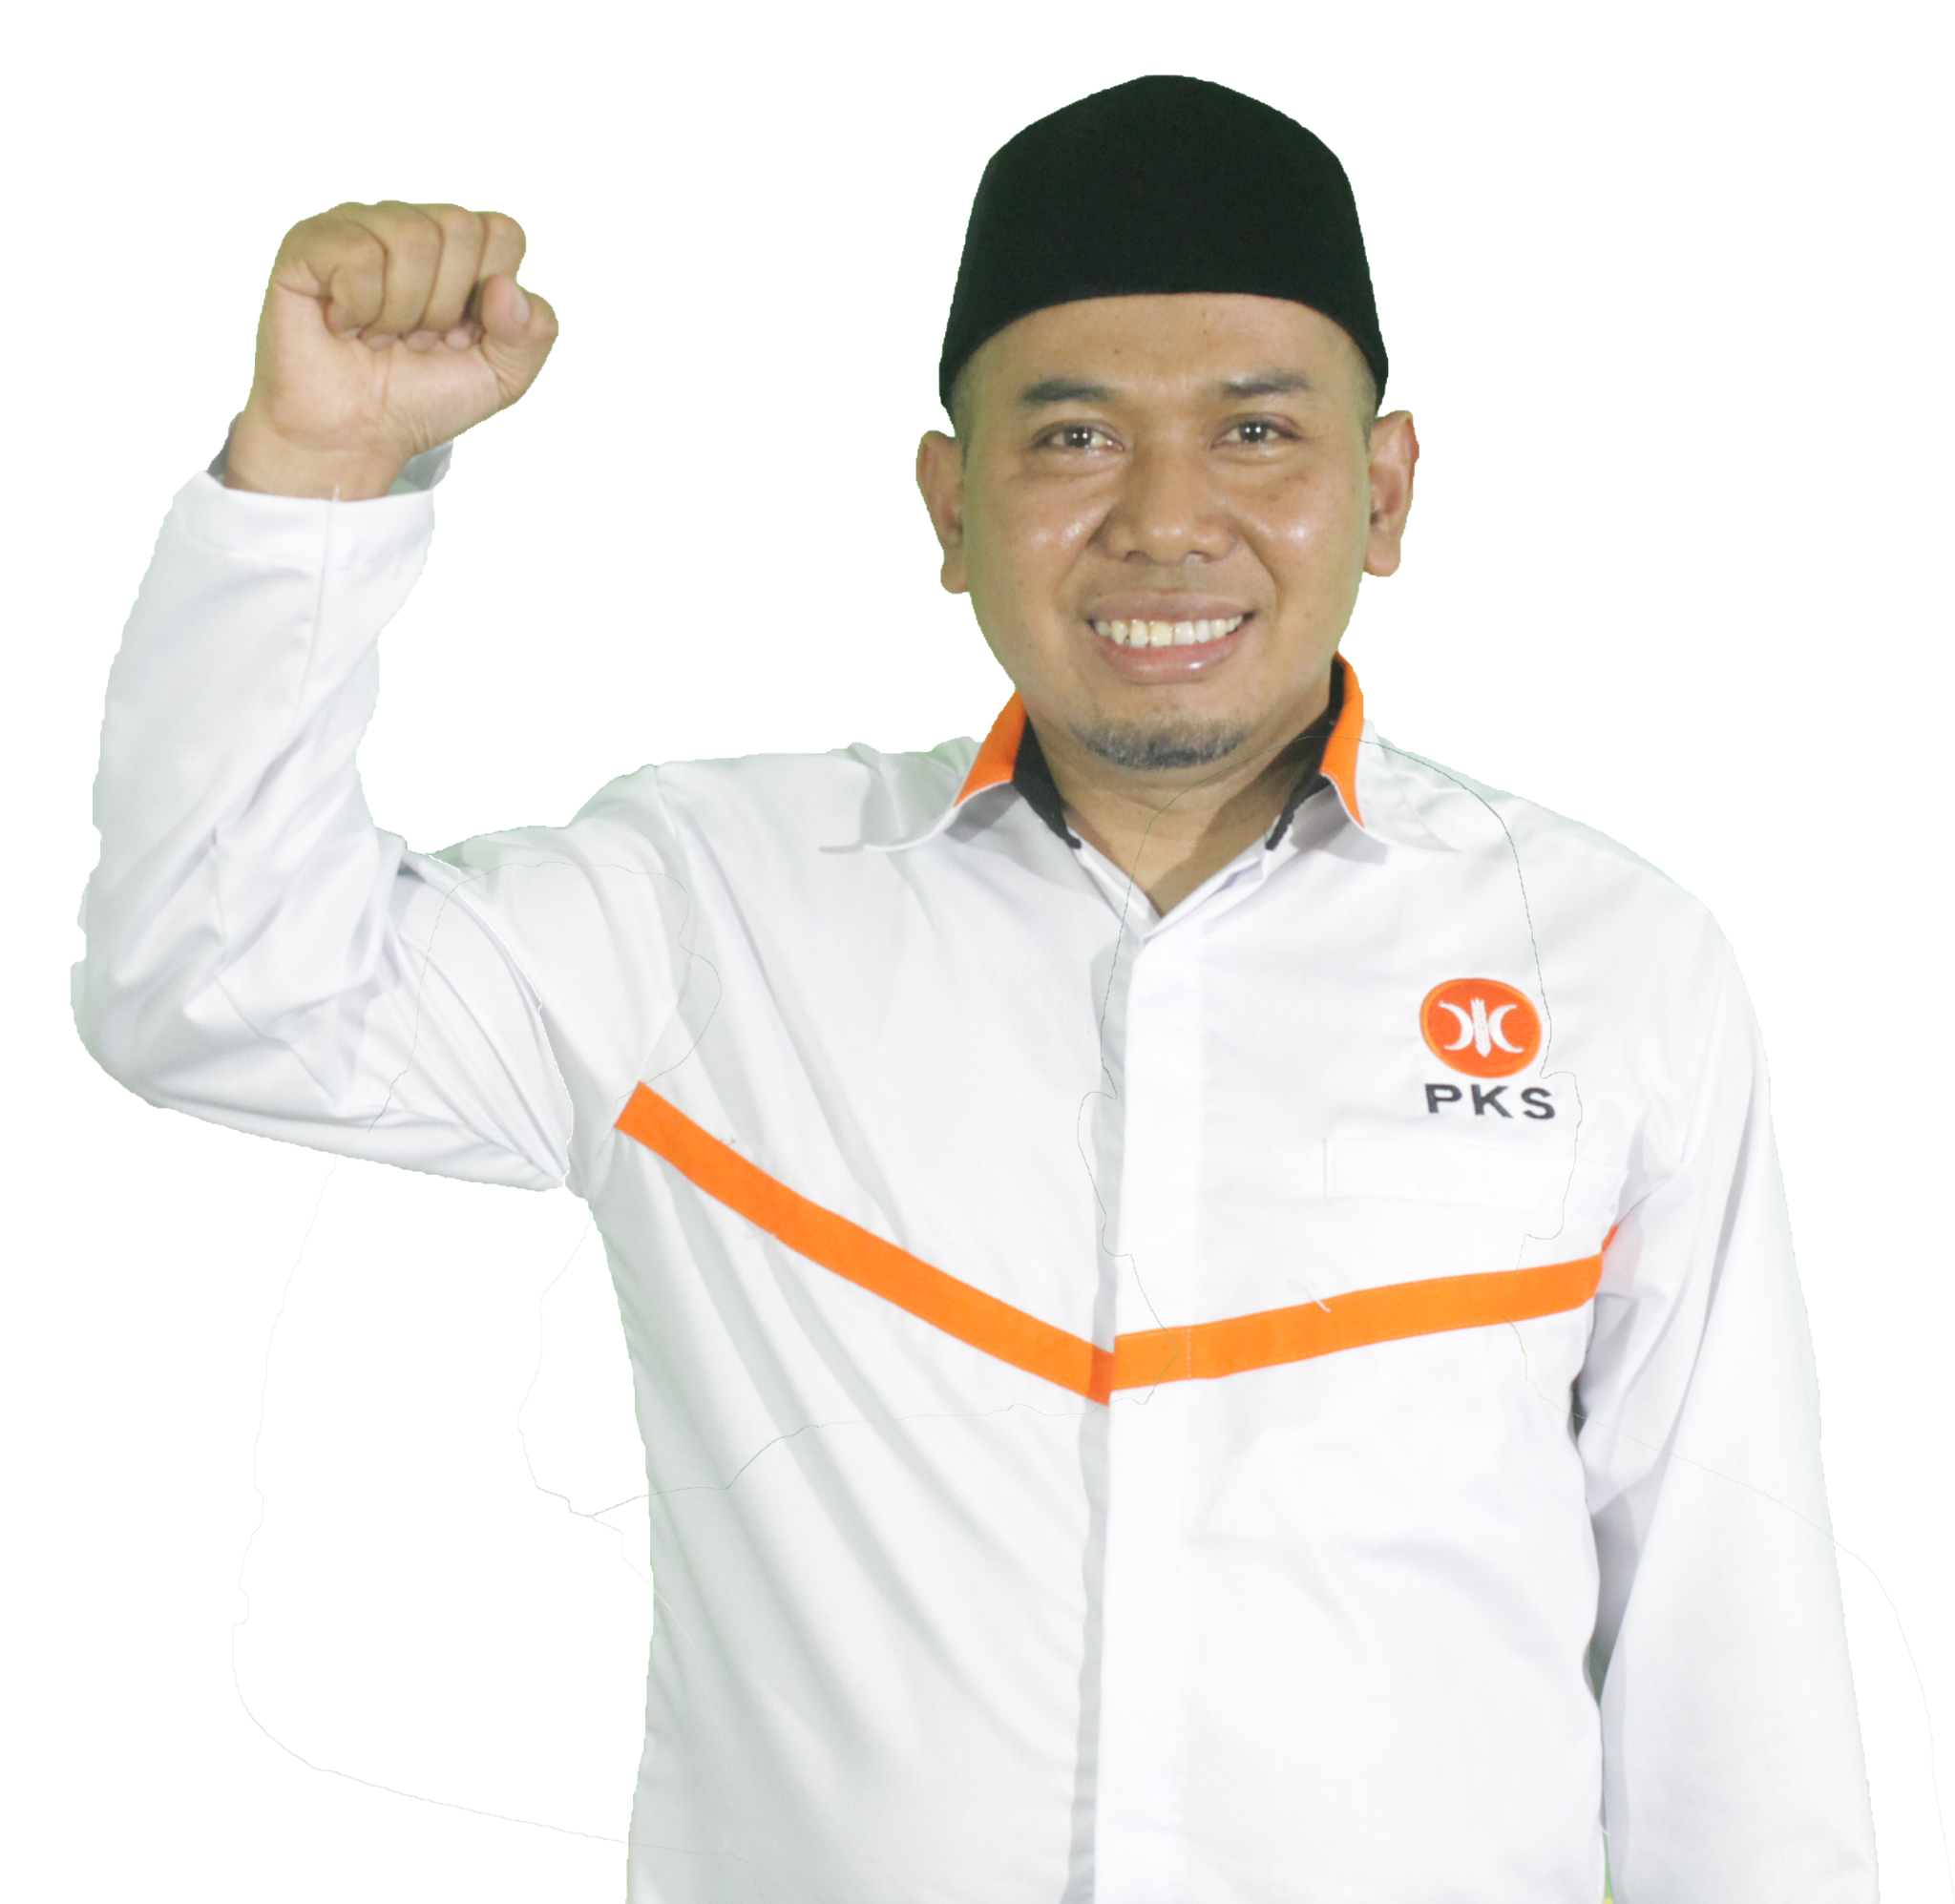 Profil Daryono Ketua DPD PKS Surakarta Yang Baru Dari Aktivis Mahasiswa Menjadi Nakhoda Partai